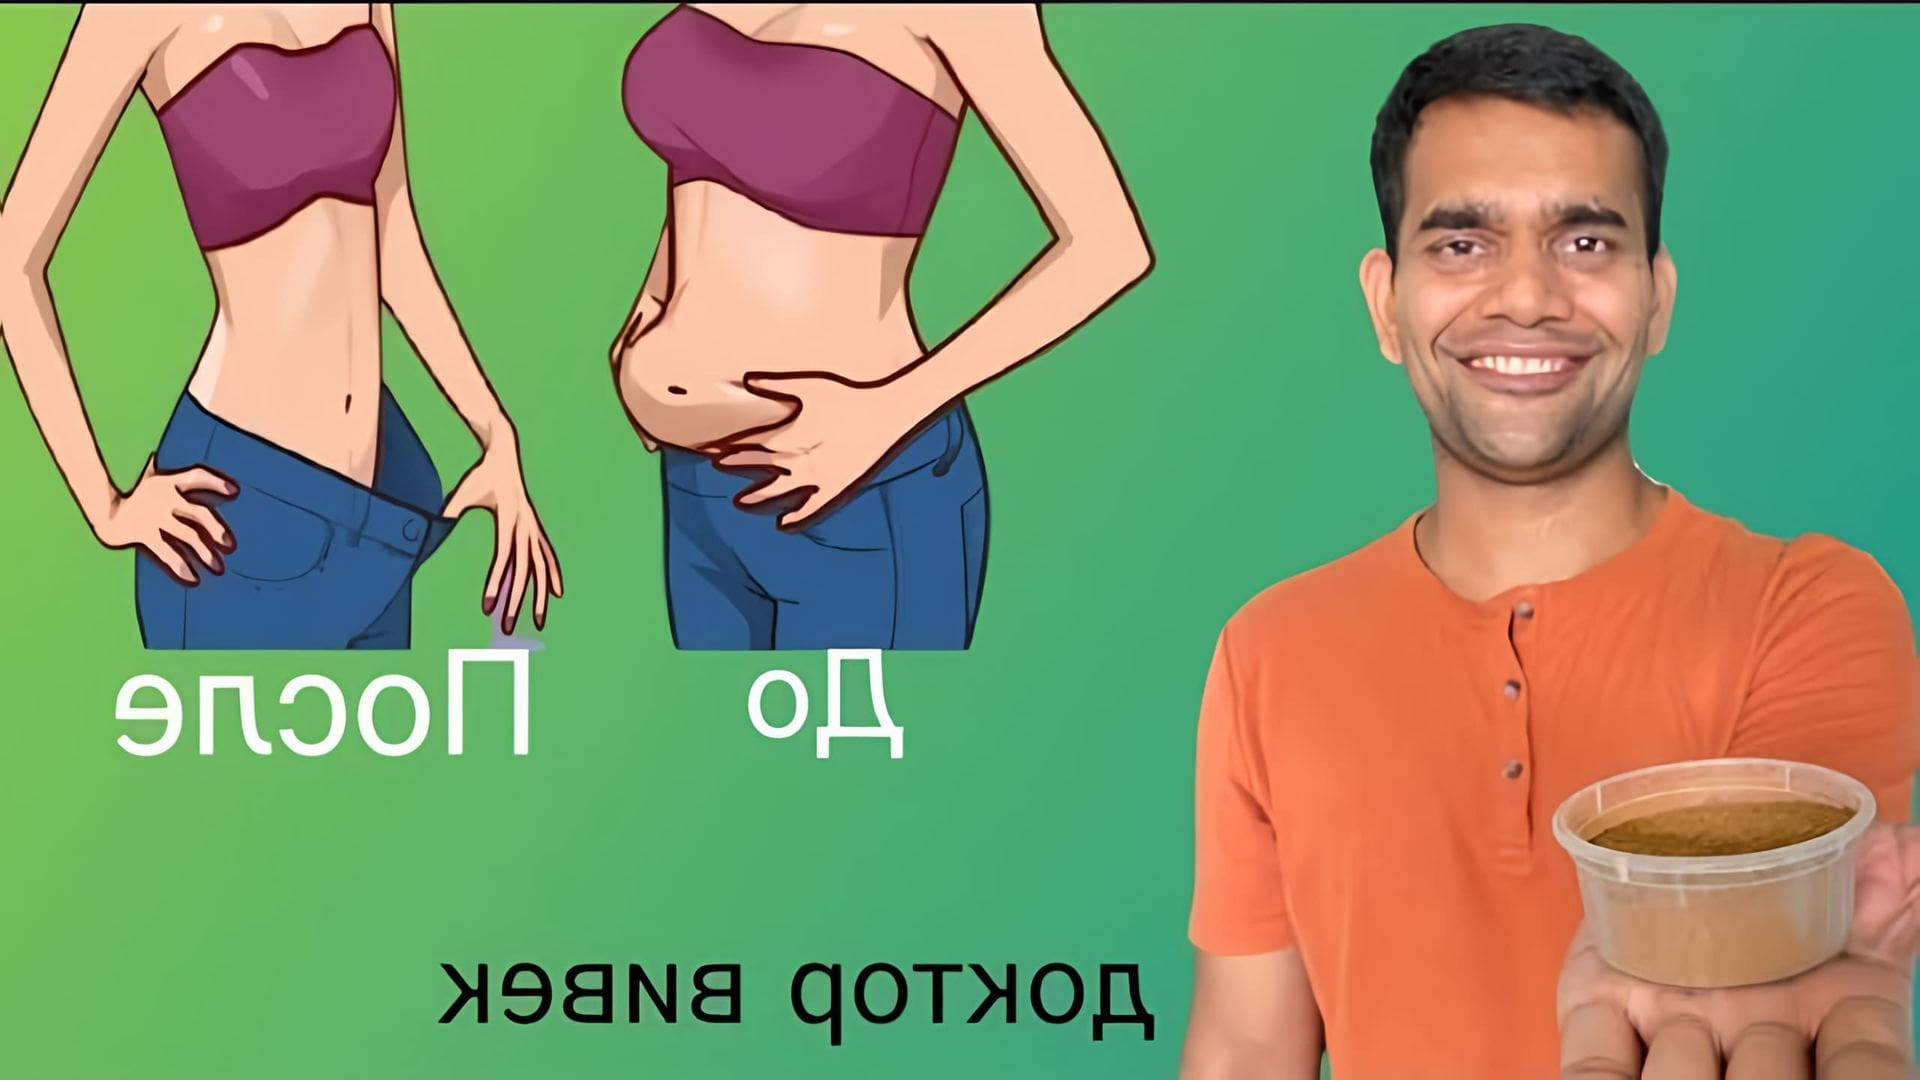 В данном видео рассказывается о пользе корицы для похудения и поддержания здоровья